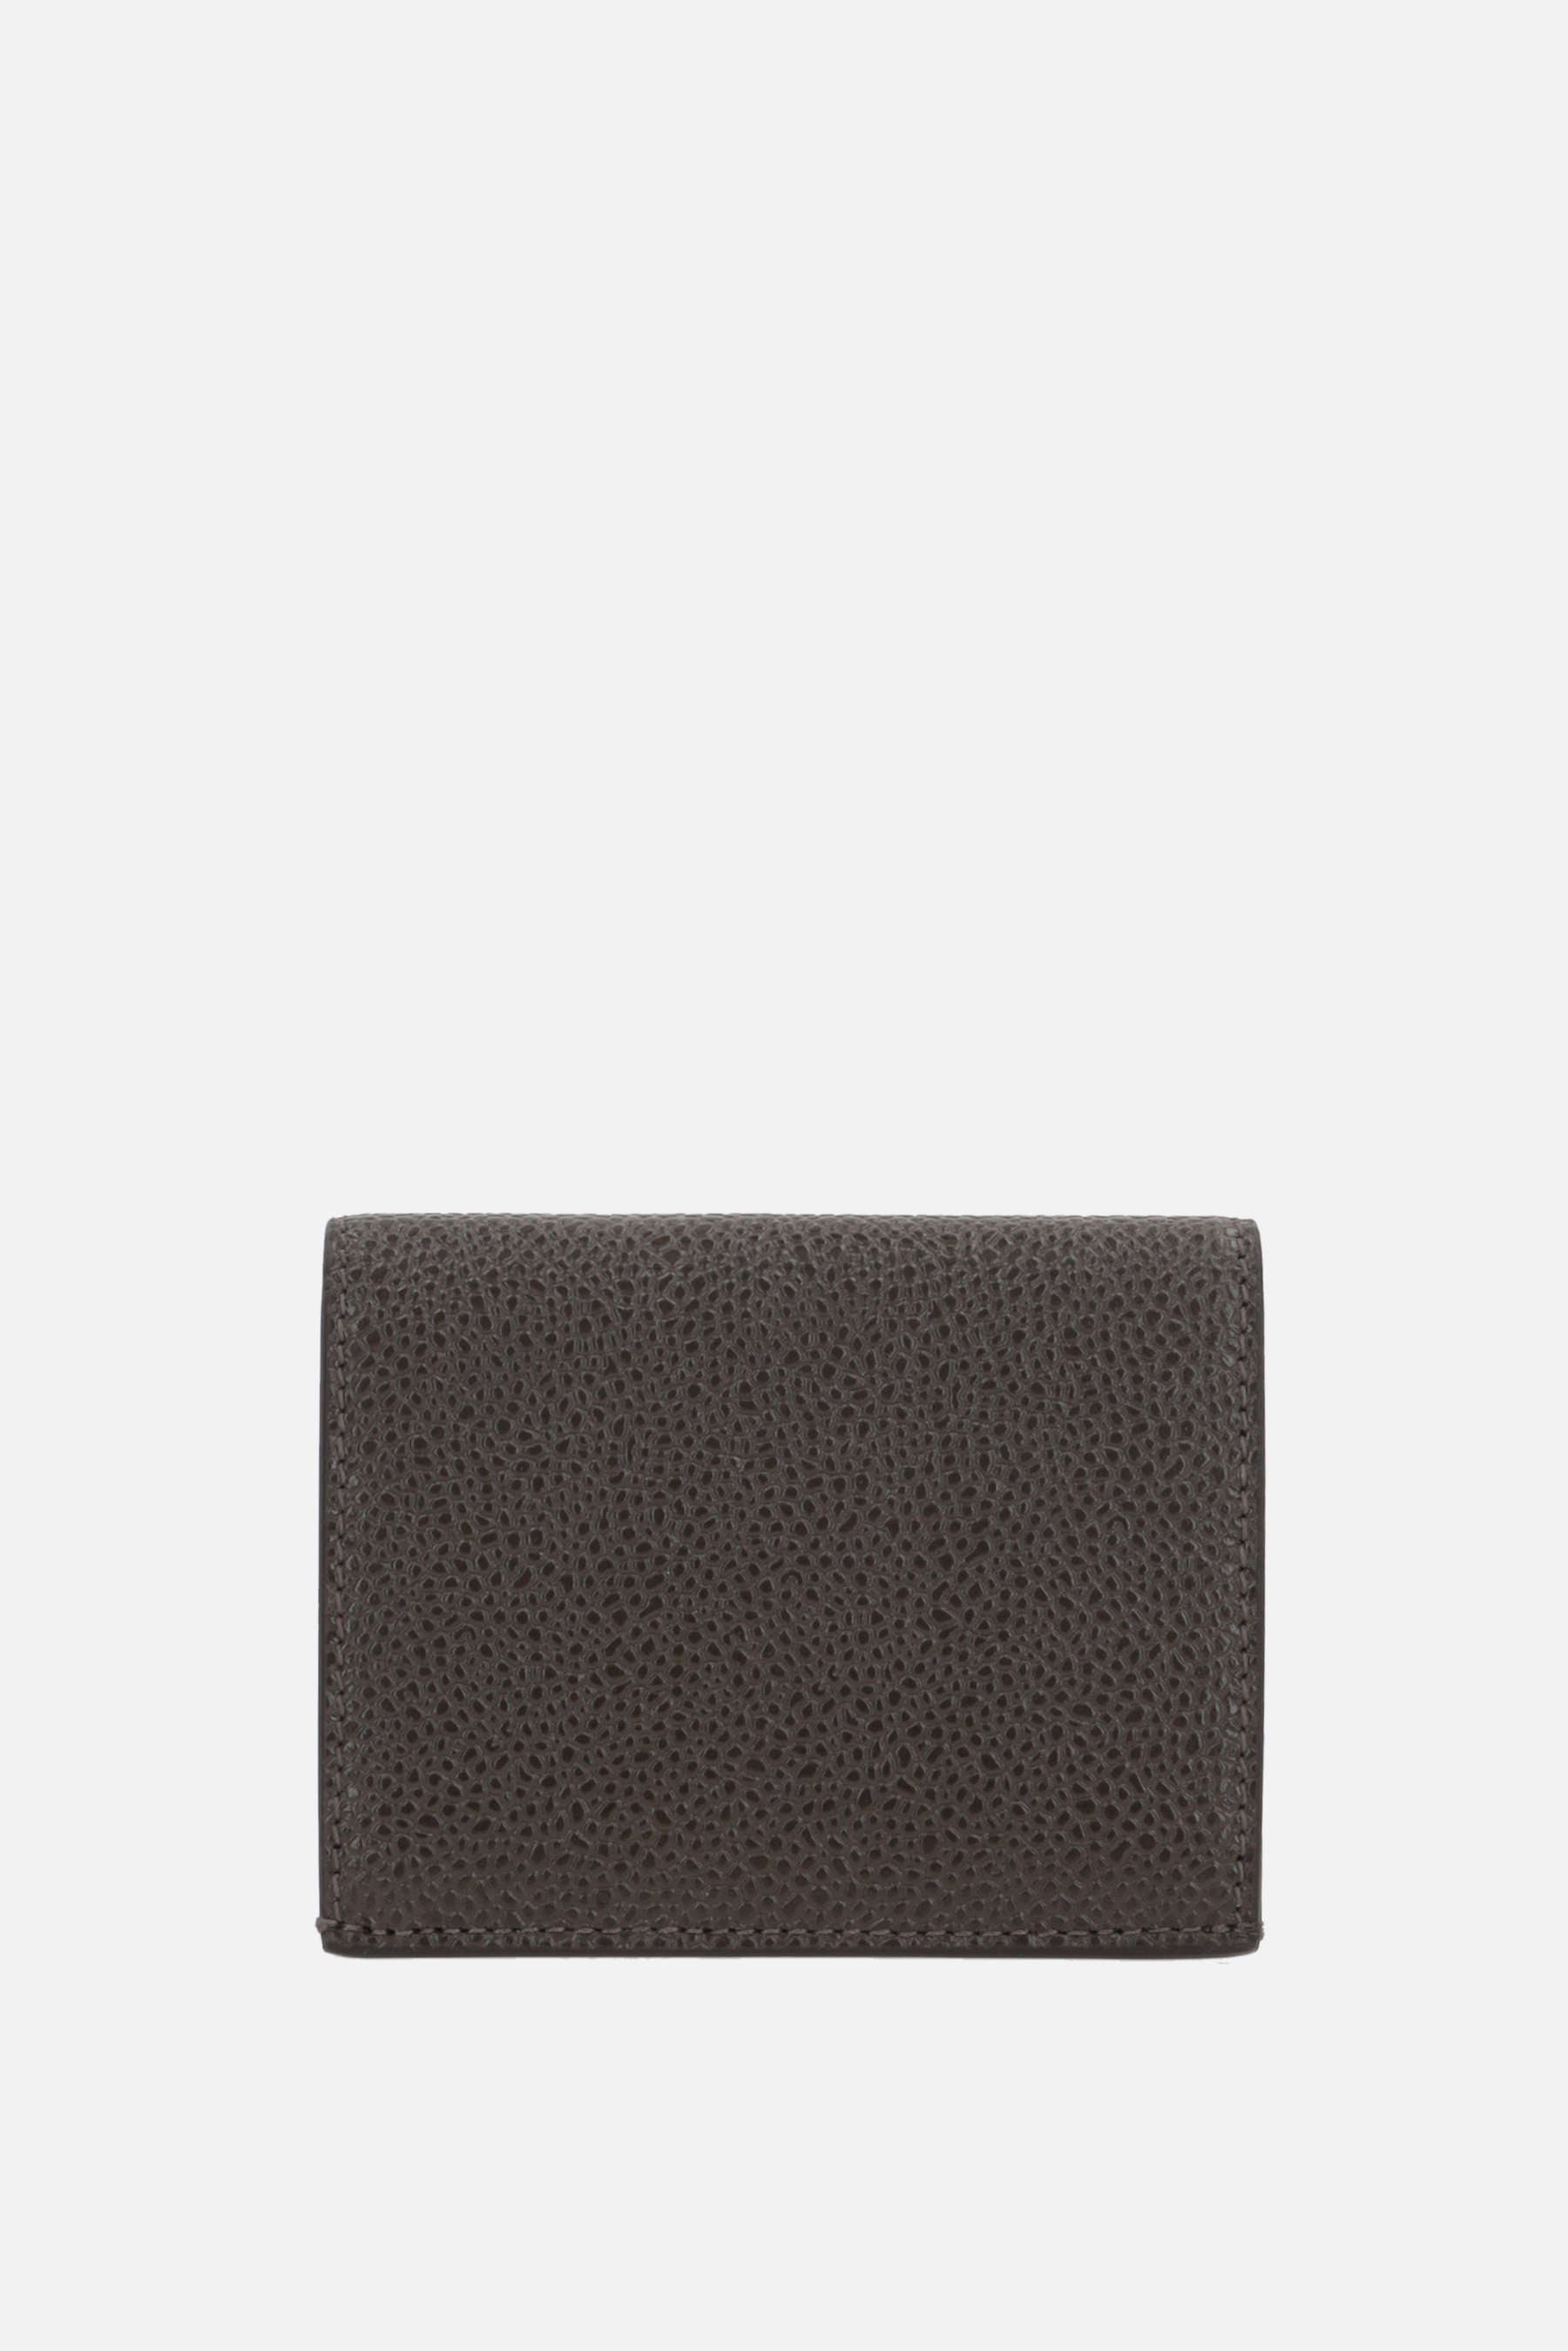 Pebble Grain leather double card case